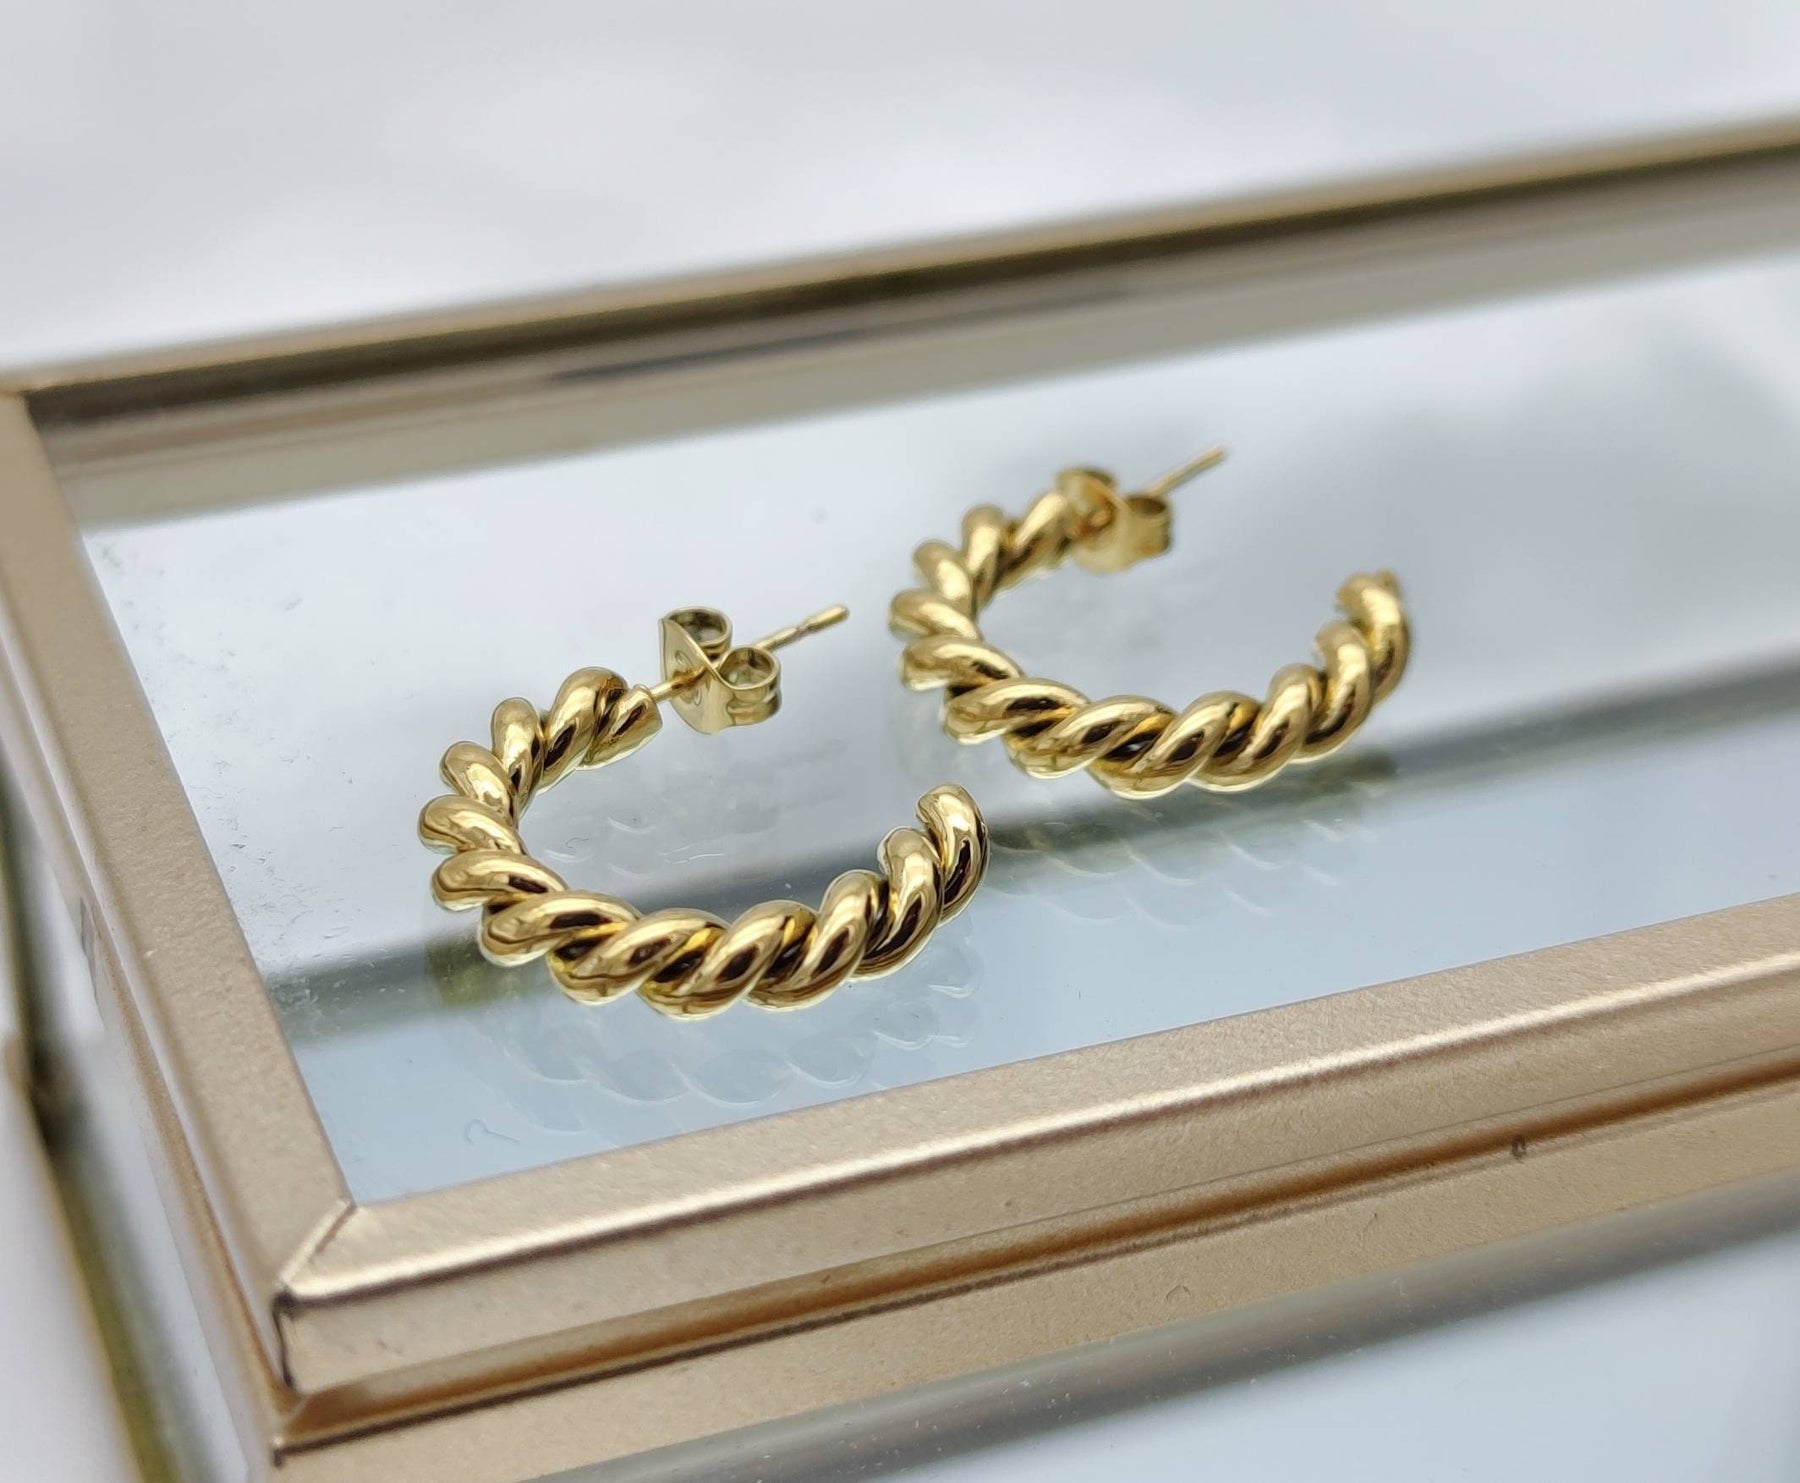 1 Paar Creolen-Edelstahl-vergoldet-Ohrstecker gold-Ohrringe gold-gedreht-gewunden-Creolenohrstecker-Twist-Hoops